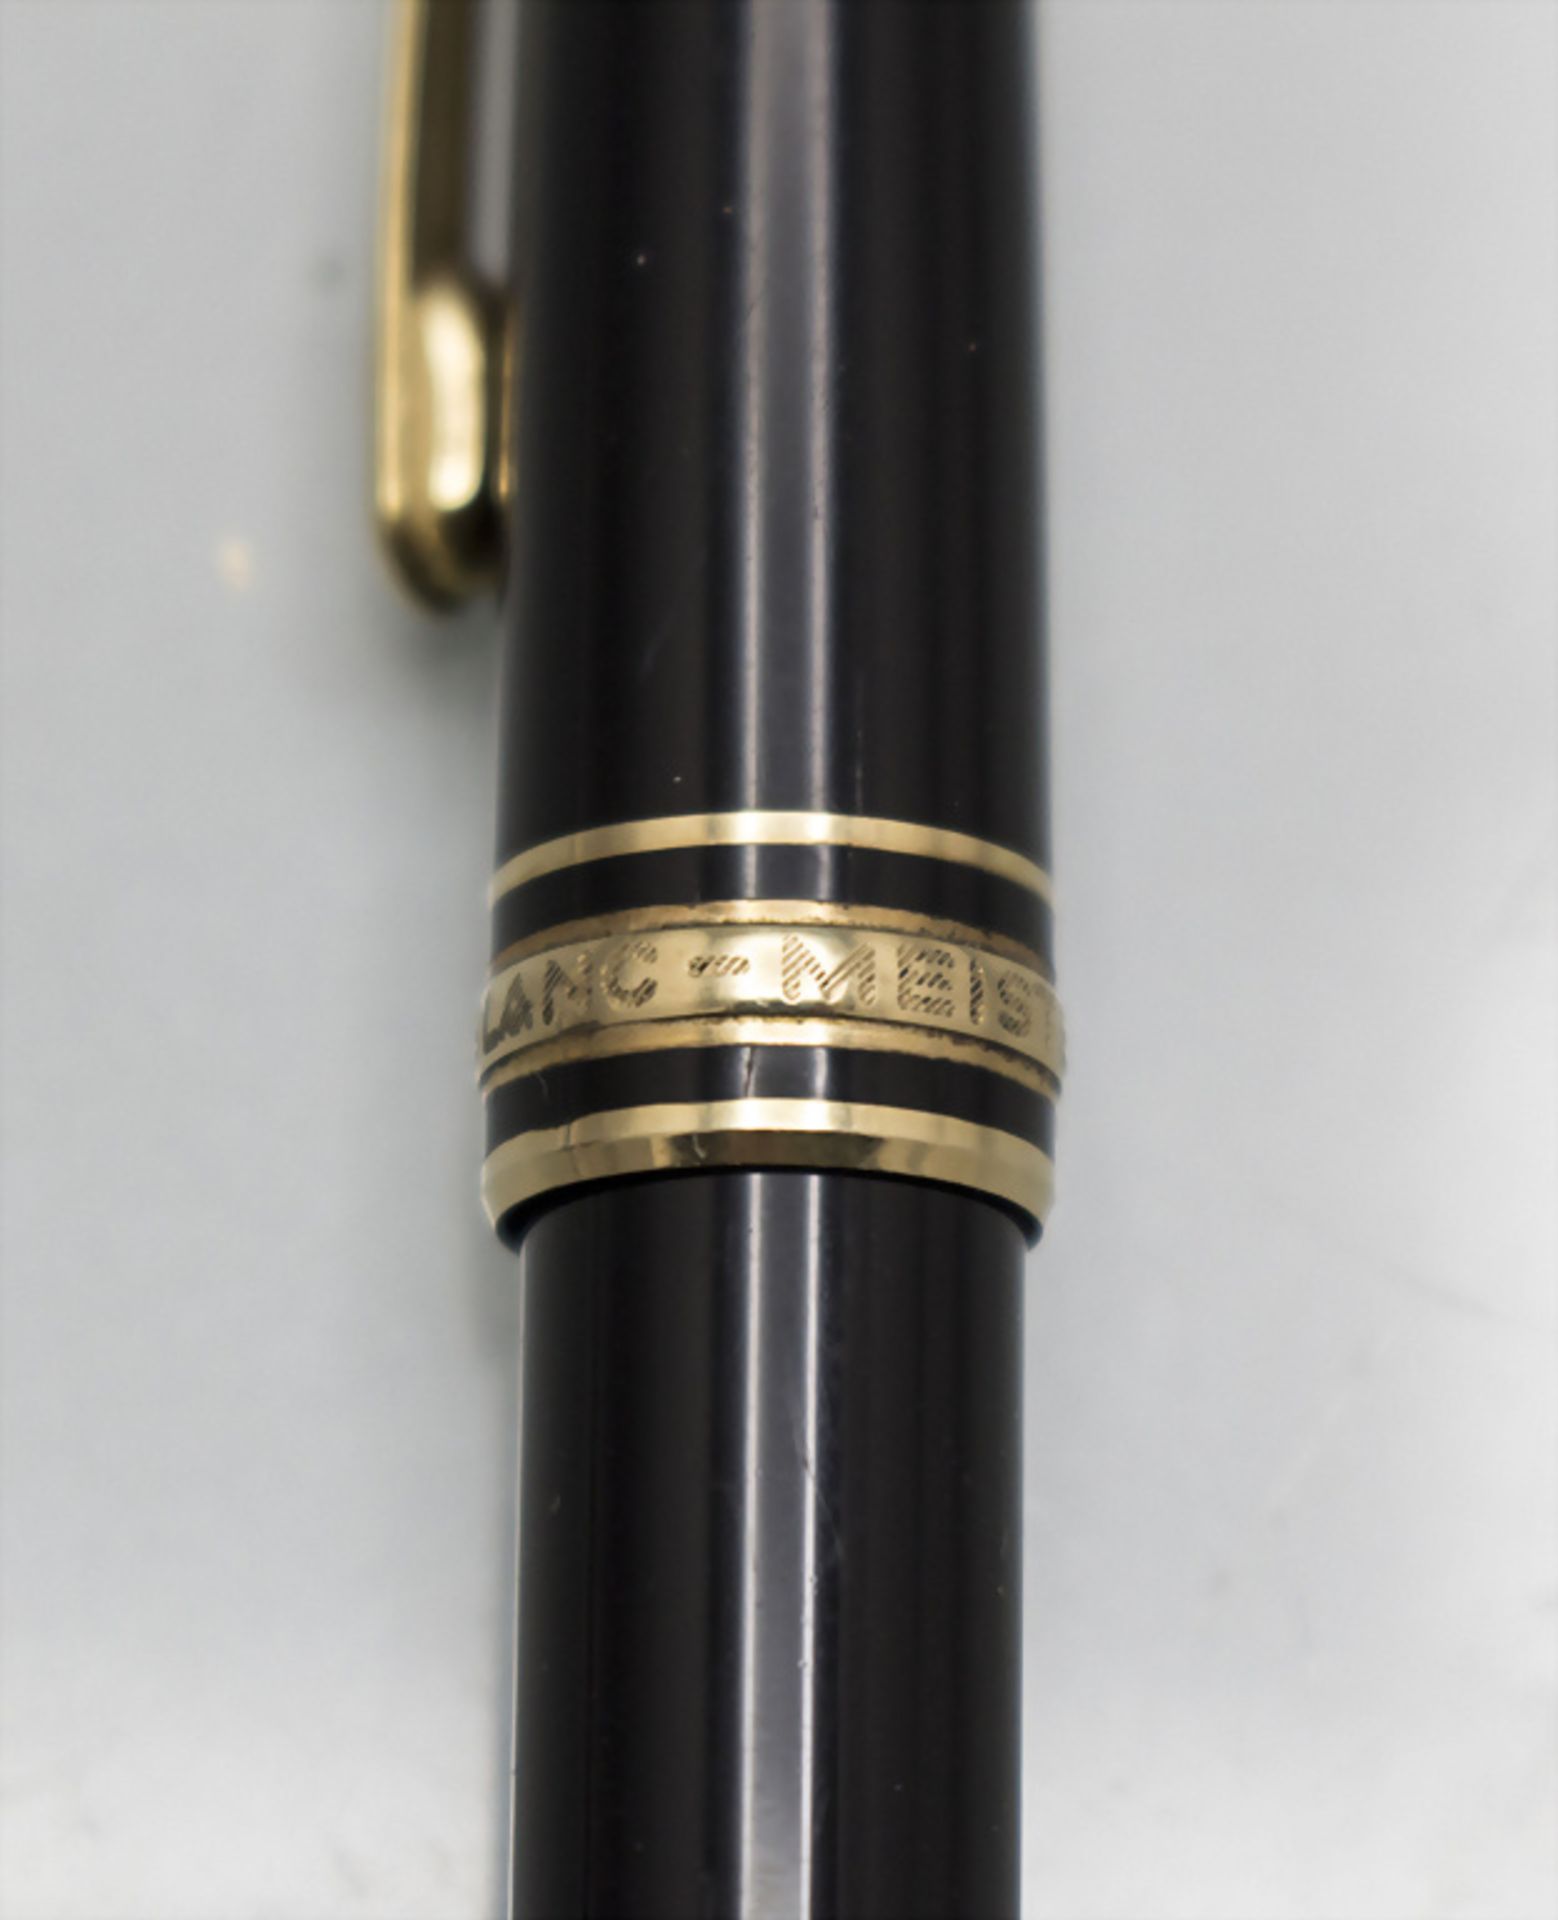 Füller 'Meisterstück' / A fountain pen, Montblanc - Image 3 of 3